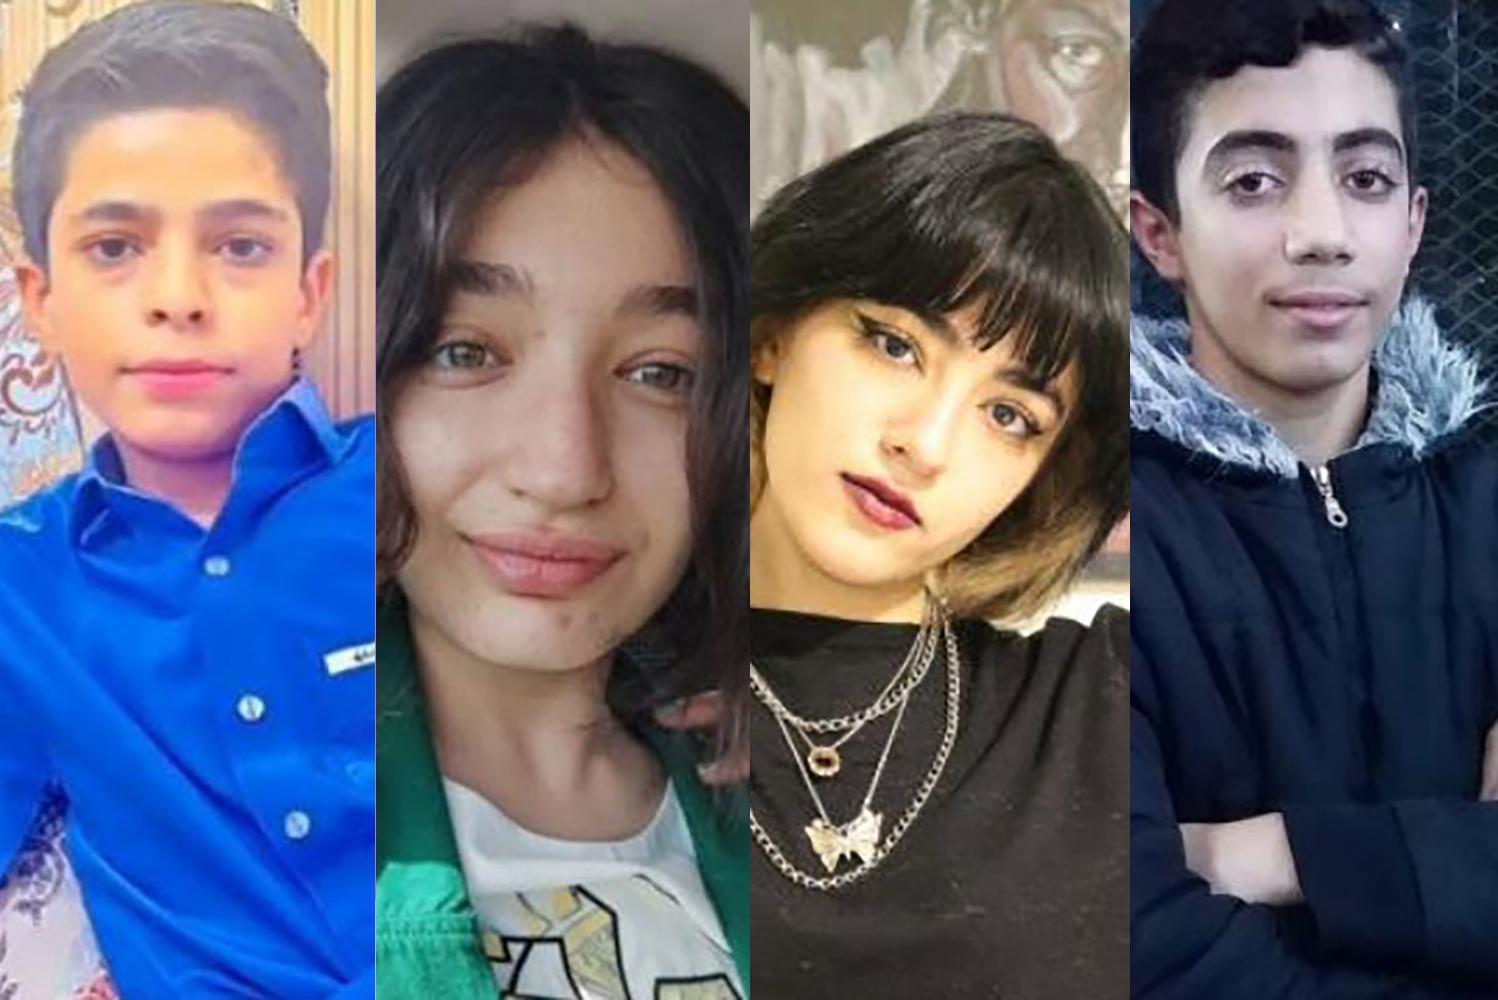 La vittima più giovane aveva appena 11 anni: questi ragazzi non cresceranno mai perché hanno sostenuto un futuro migliore in Iran